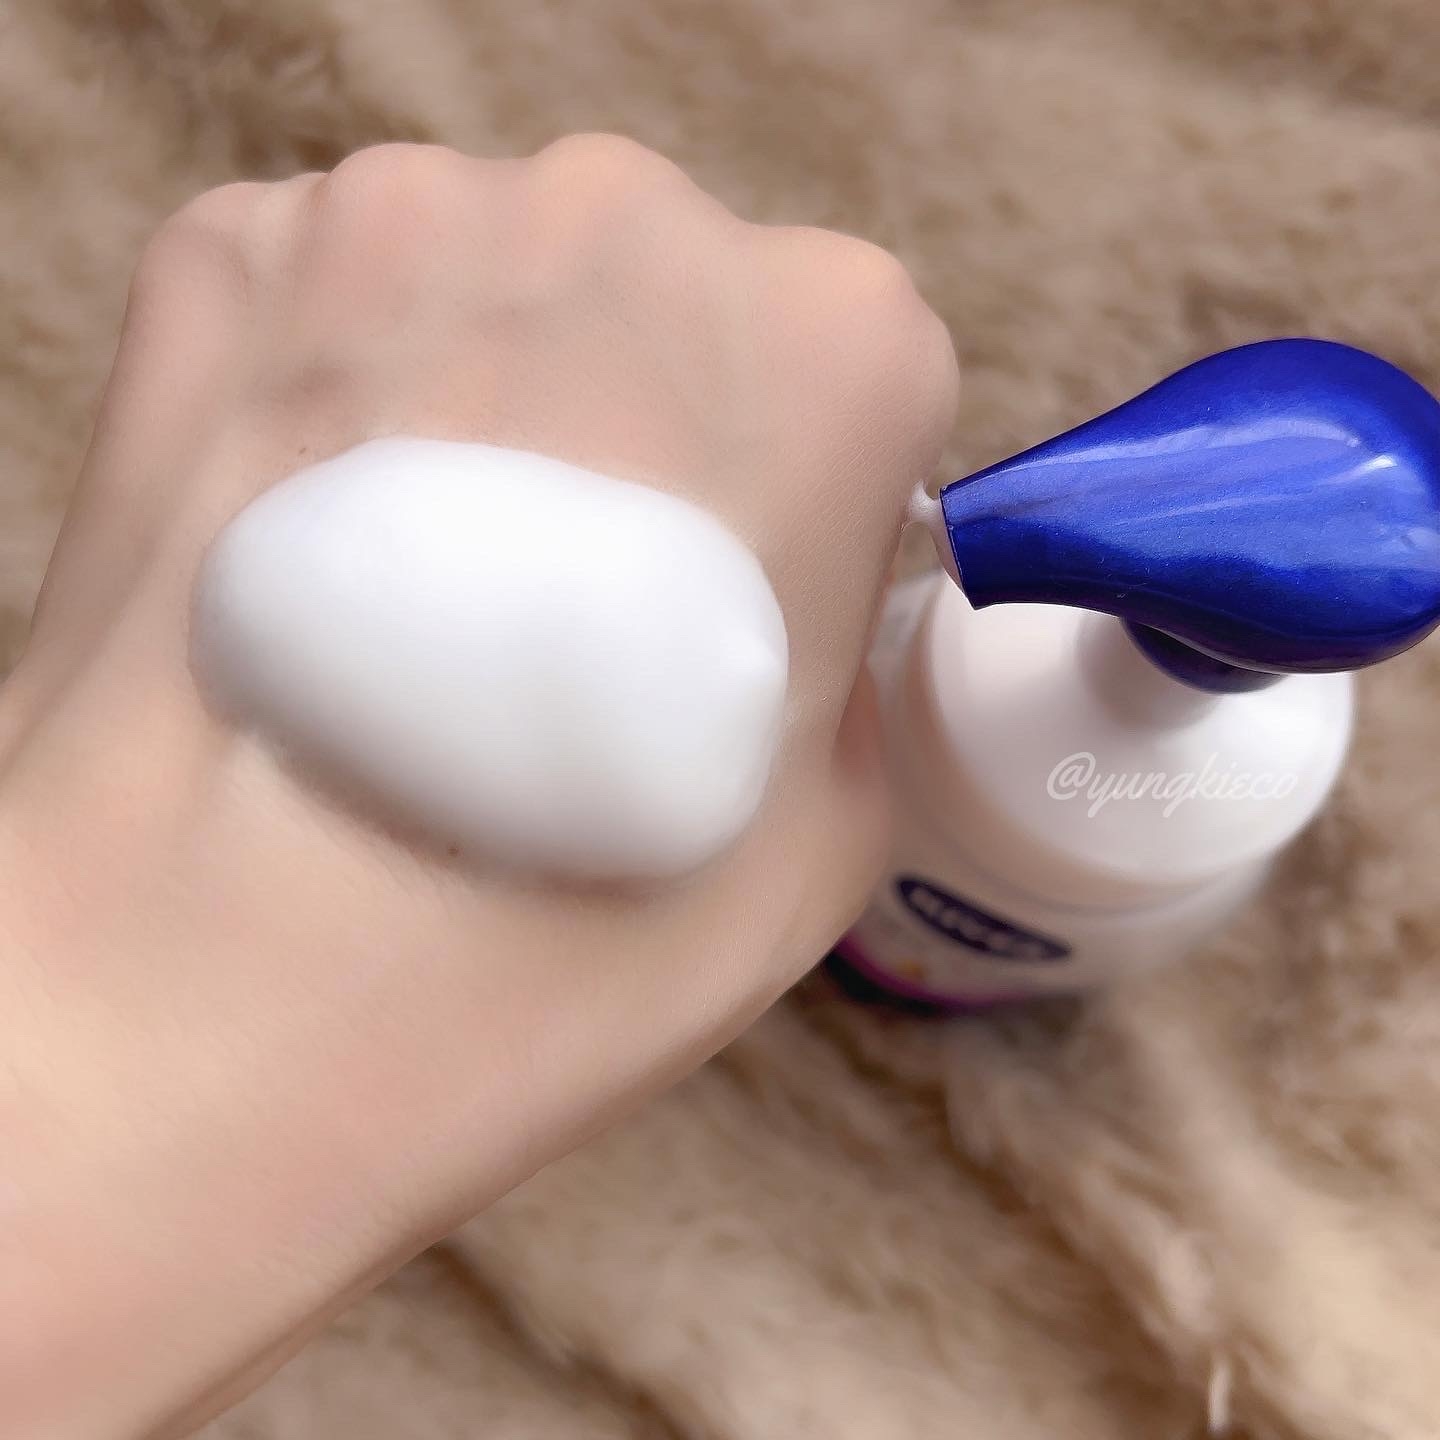 NIVEA(ニベア) クリームケア弱酸性泡洗顔の良い点・メリットに関するyungさんの口コミ画像2